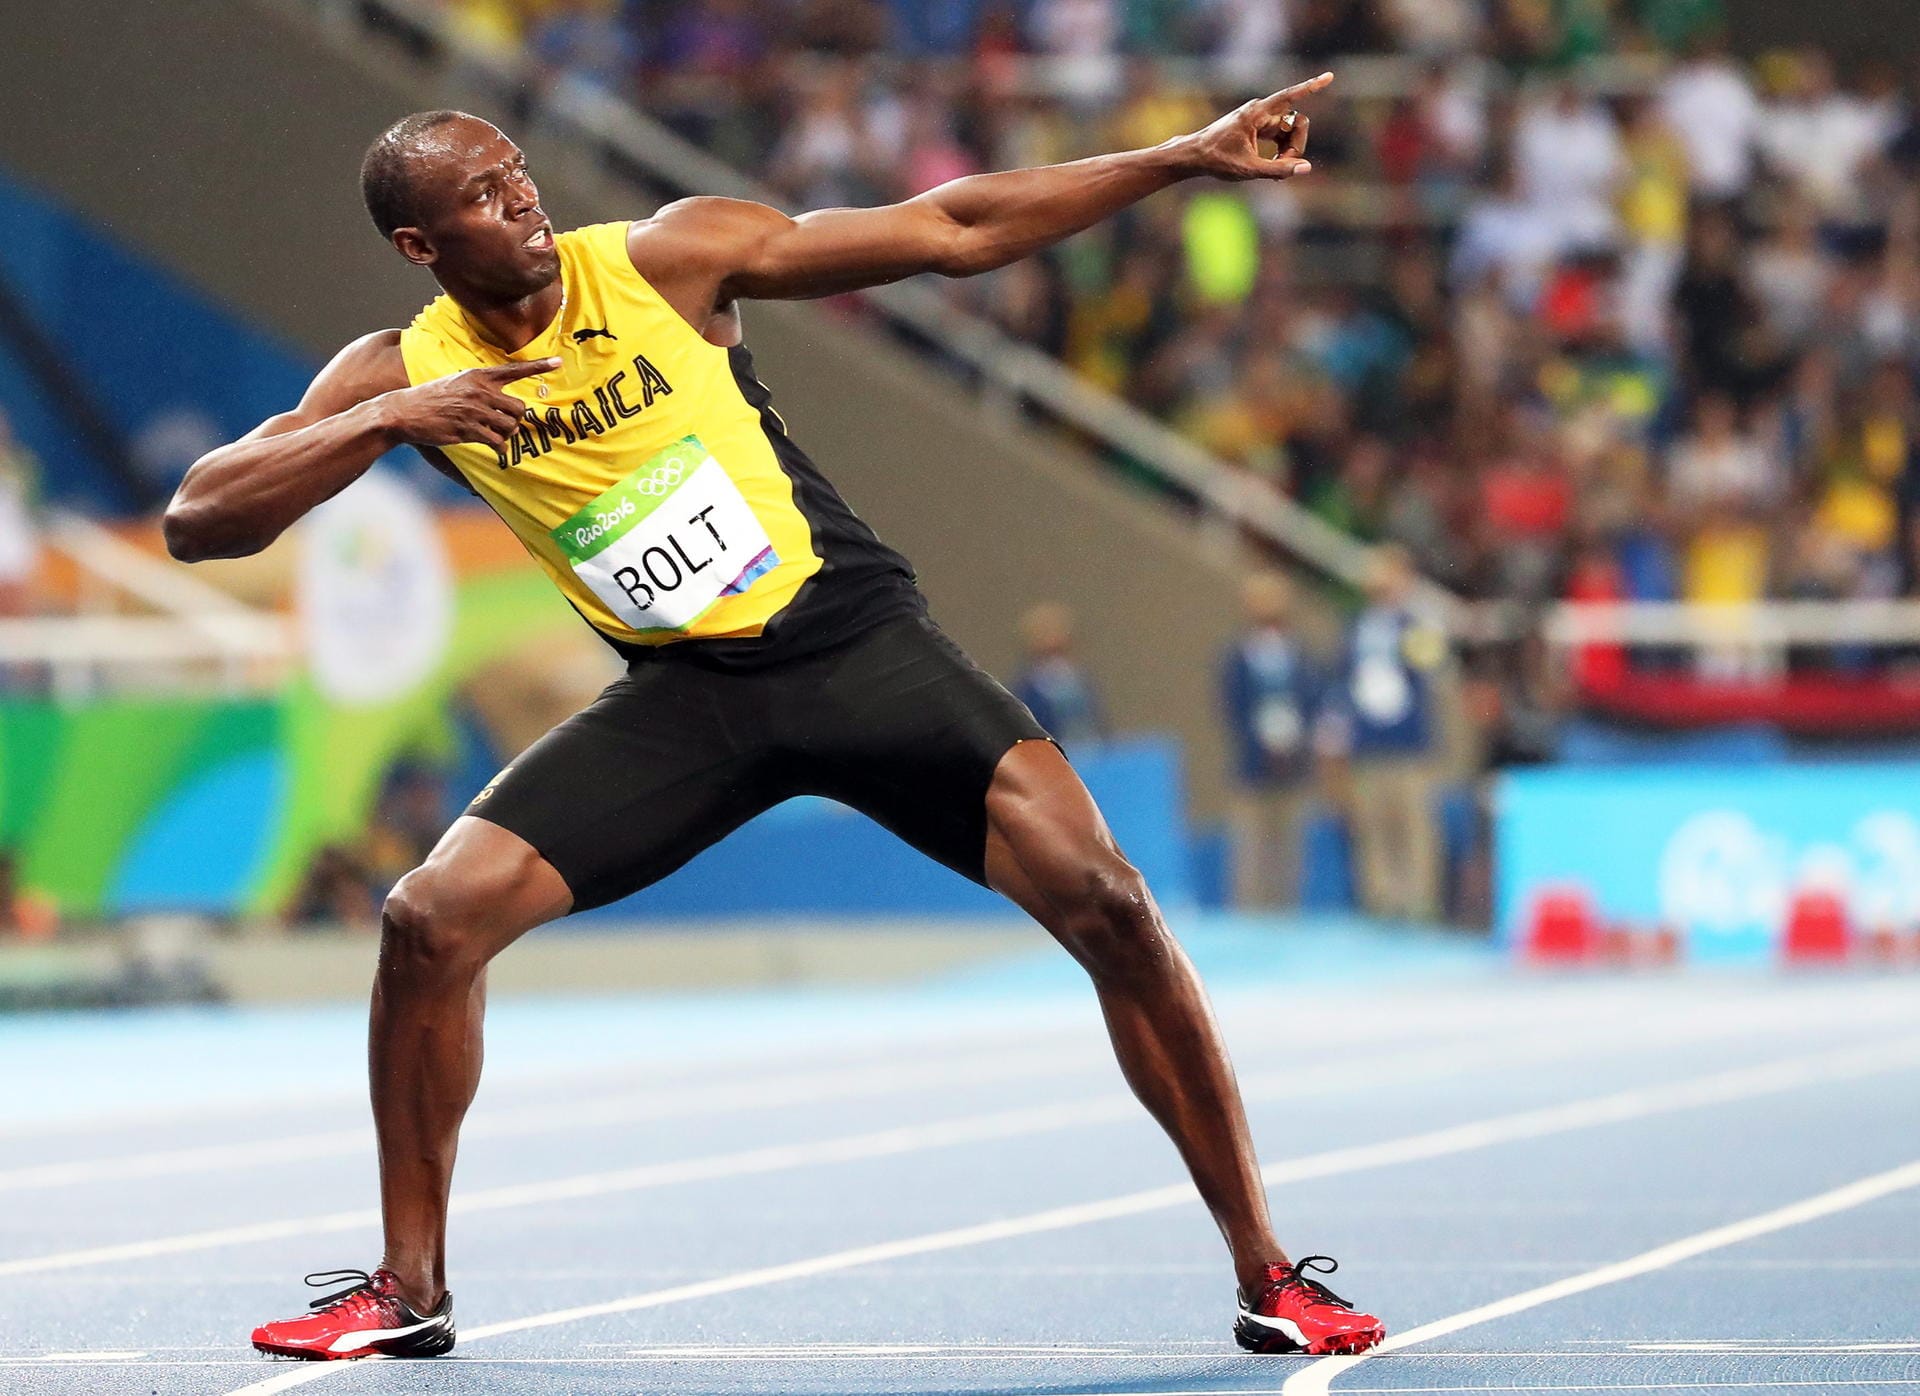 Nach seinem Sieg über die 200 Meter, ist Usain Bolt auf einem guten Weg endgültig unsterblich zu werden. Abseits der Laufstrecke hat sich Bolt mit seiner Pose bereits ein unverkennbares Markenzeichen geschaffen. Deshalb sind die nach links zeigenden Arme immer wieder ein Highlight jeder Bolt-Show.